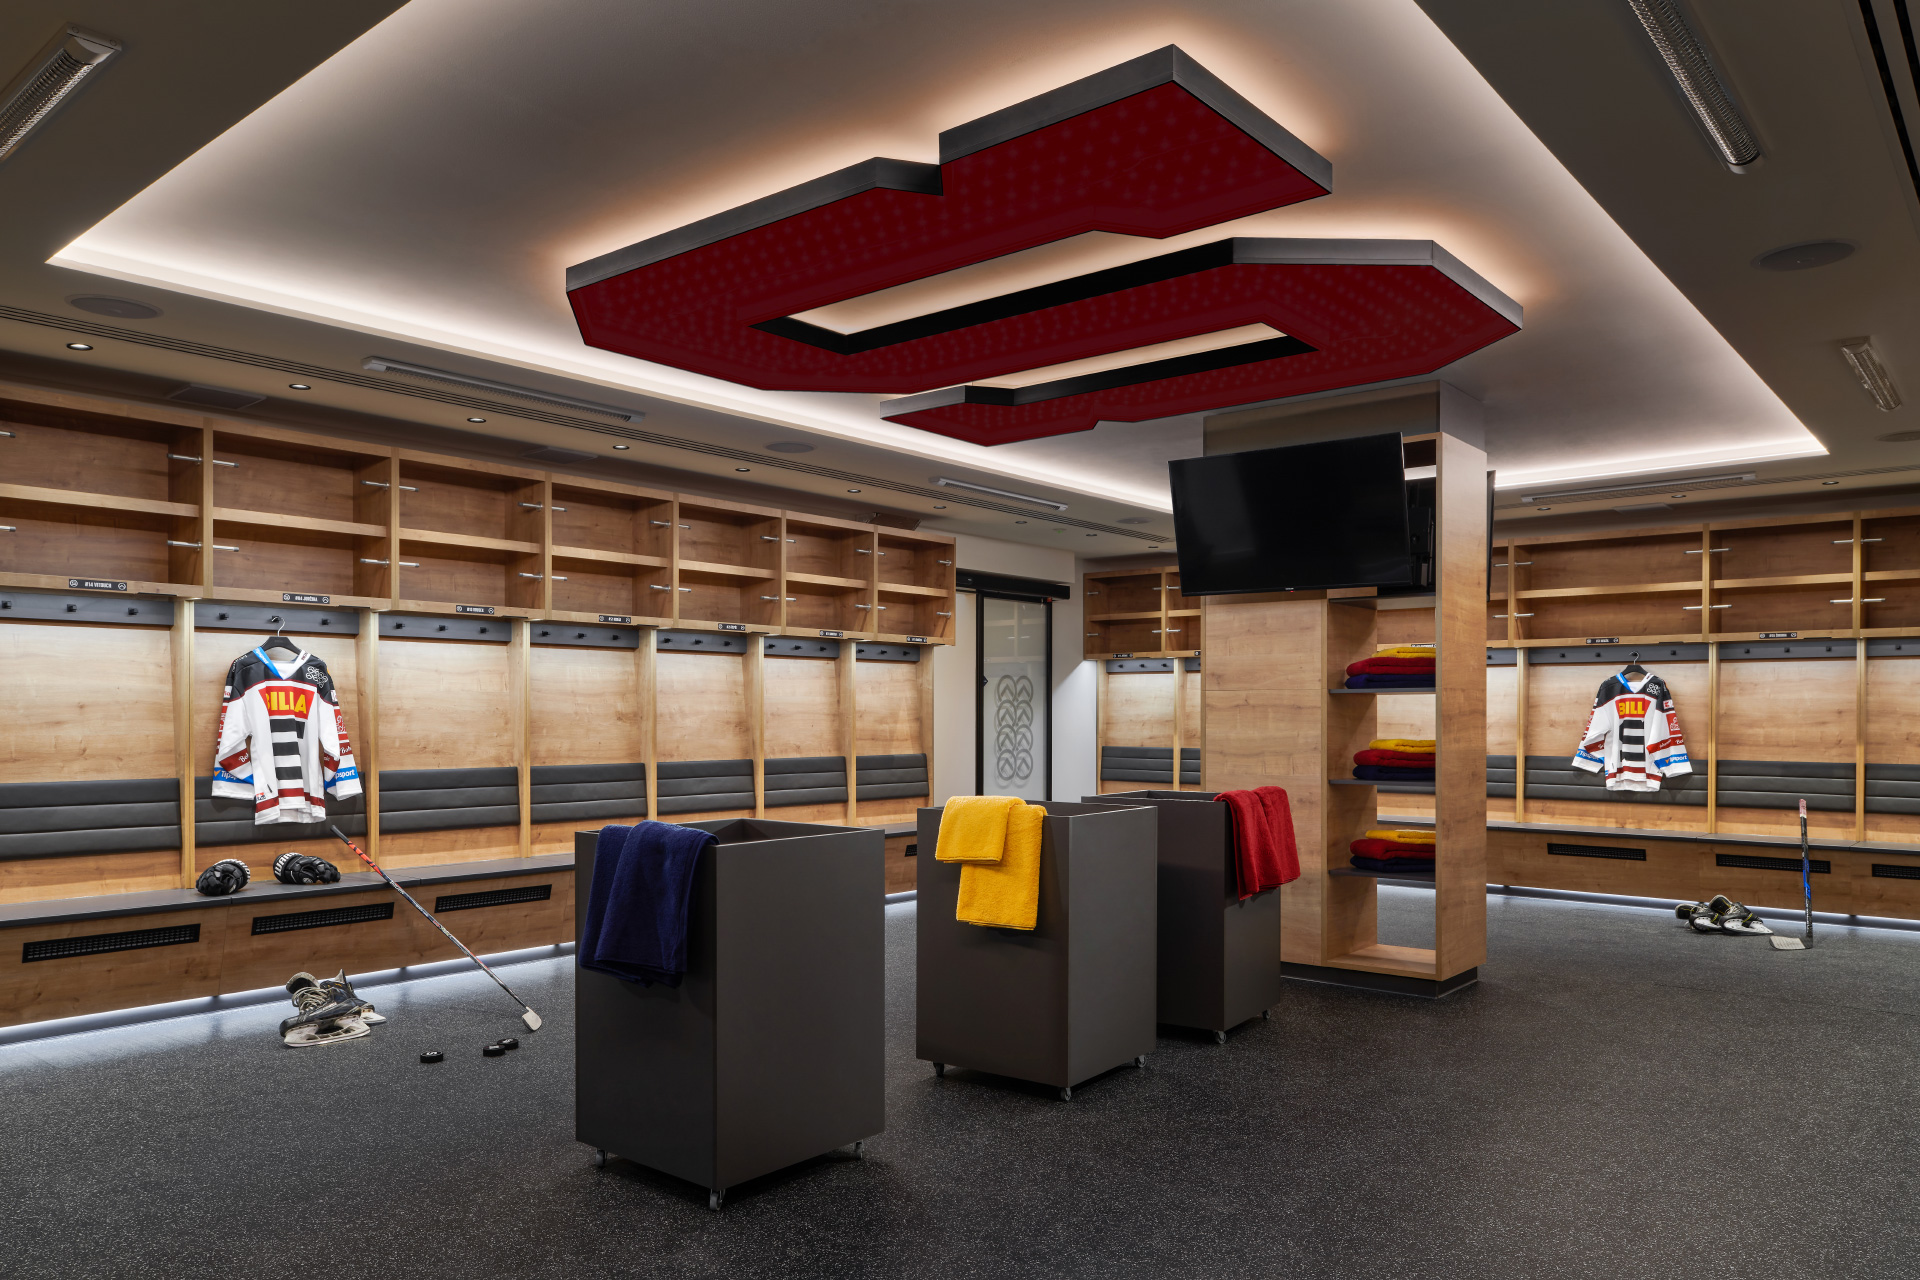 Hanák nábytek modernizace zázemí hokejového klubu